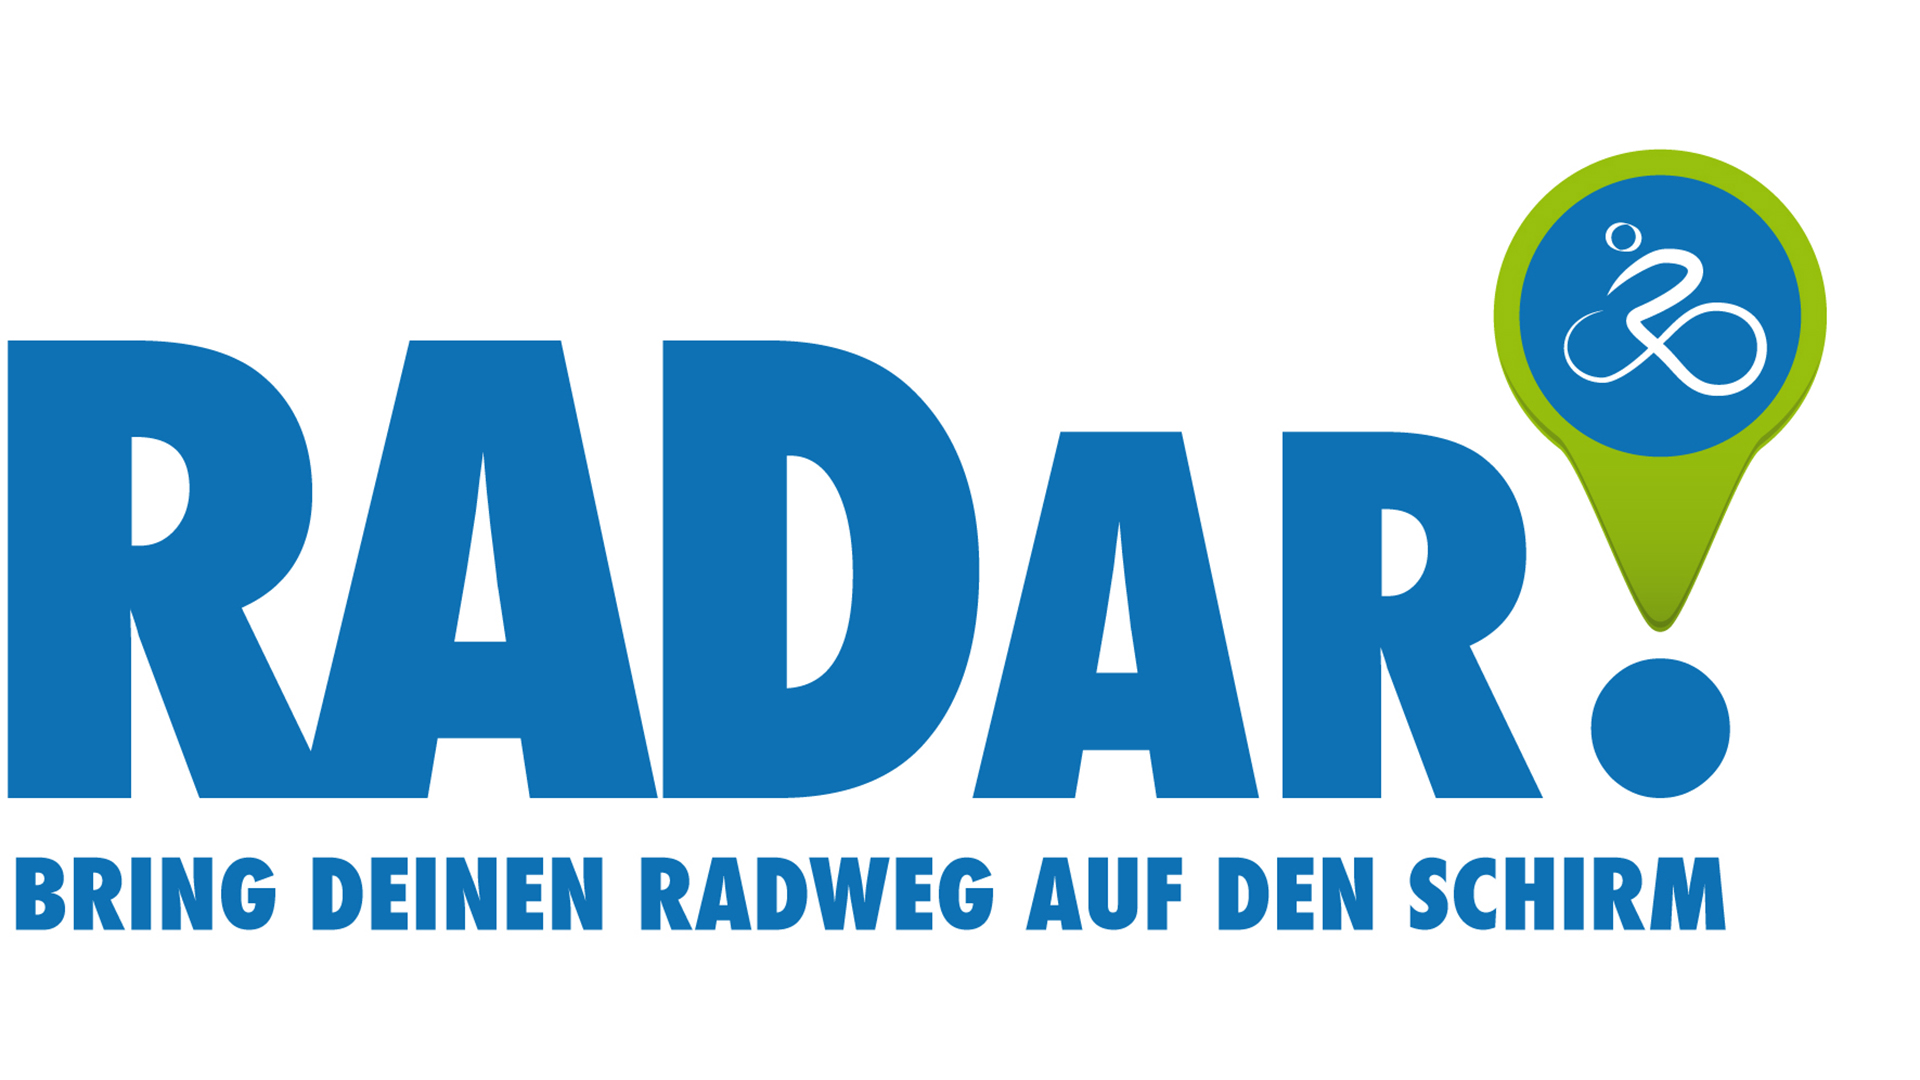 Logo der Applikation "Radar. Bring deinen Radweg auf den Schirm".